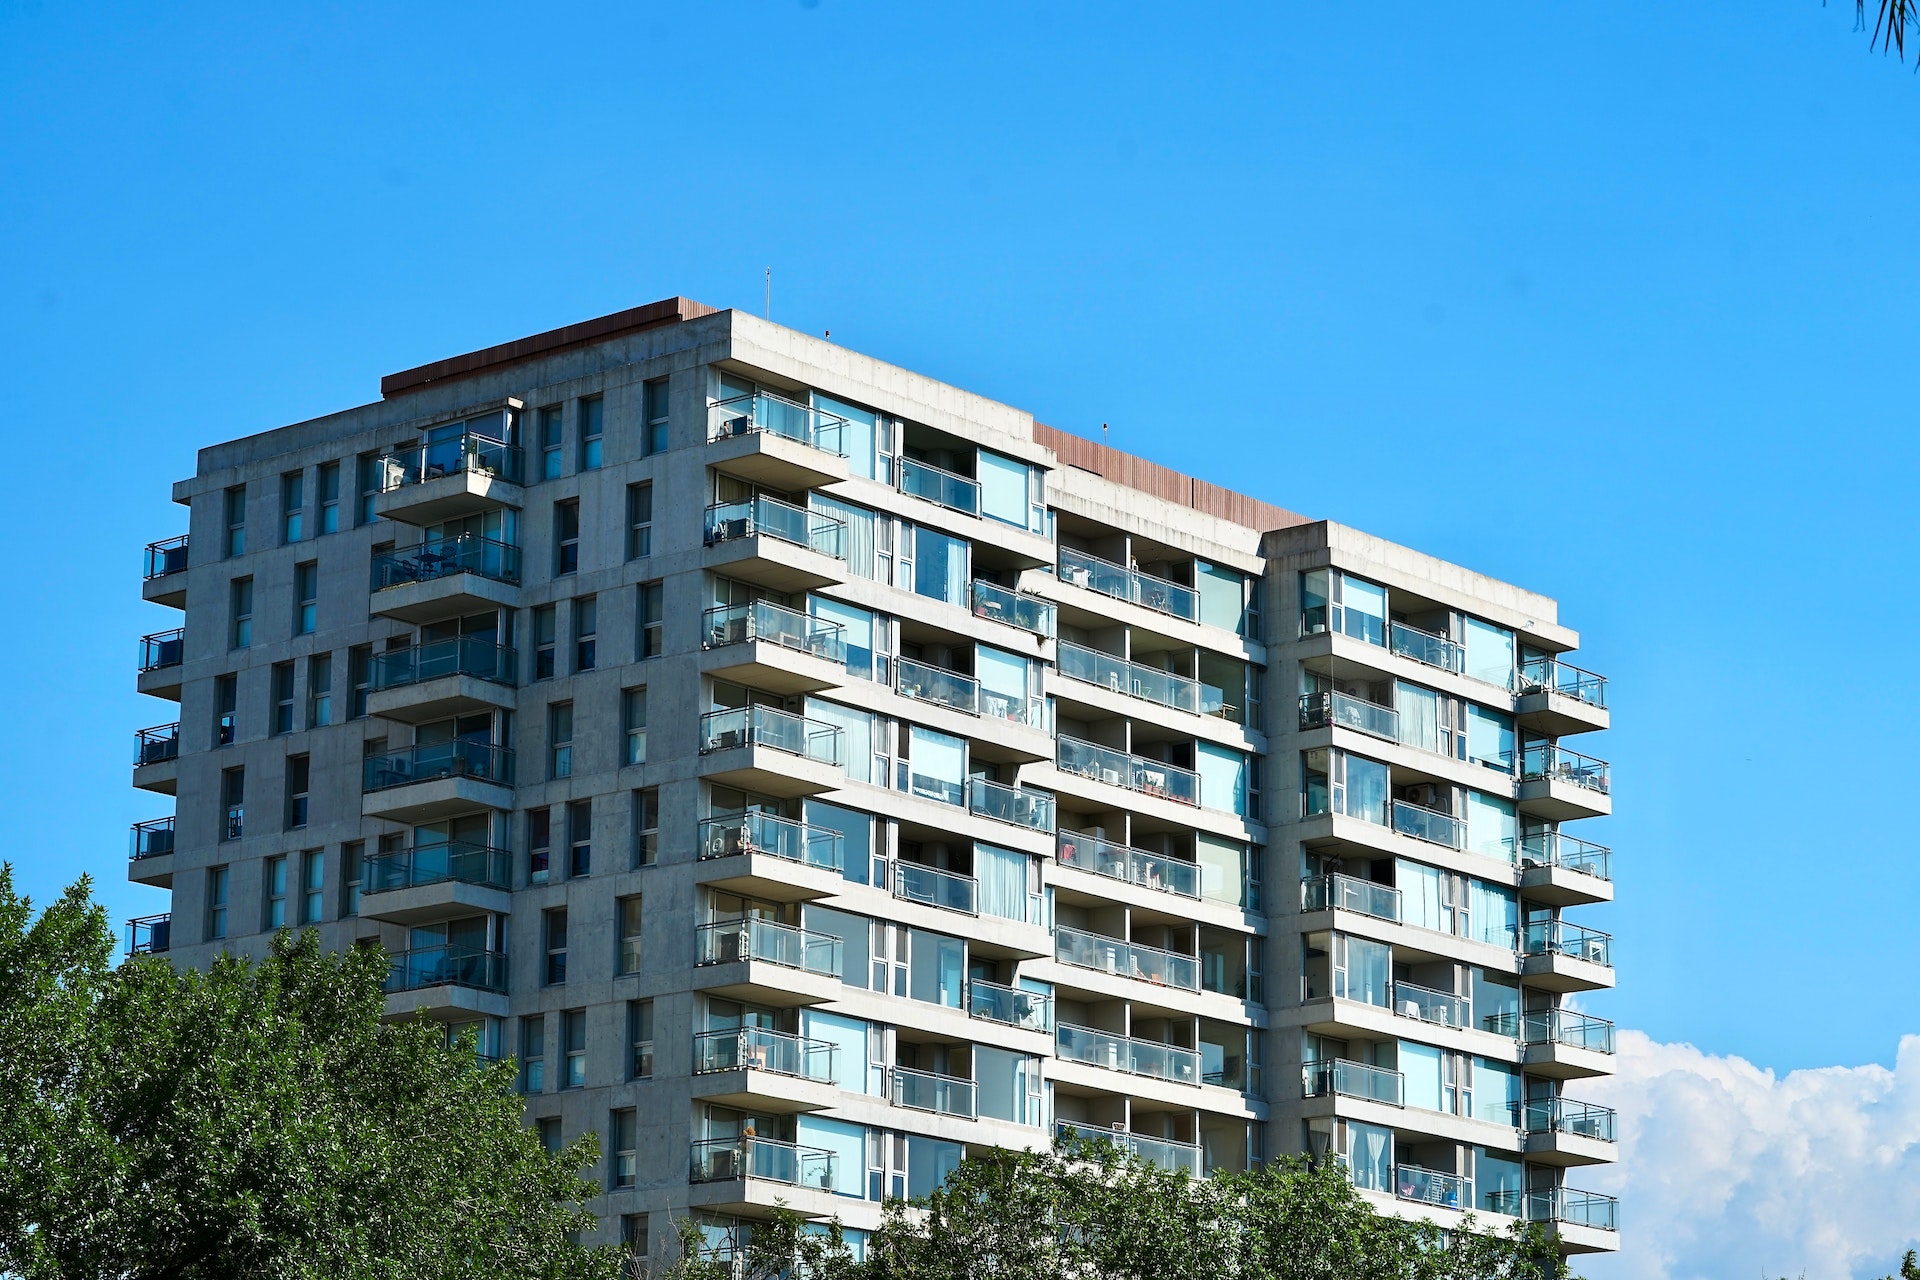 Condominium and Cooperative License Requirements